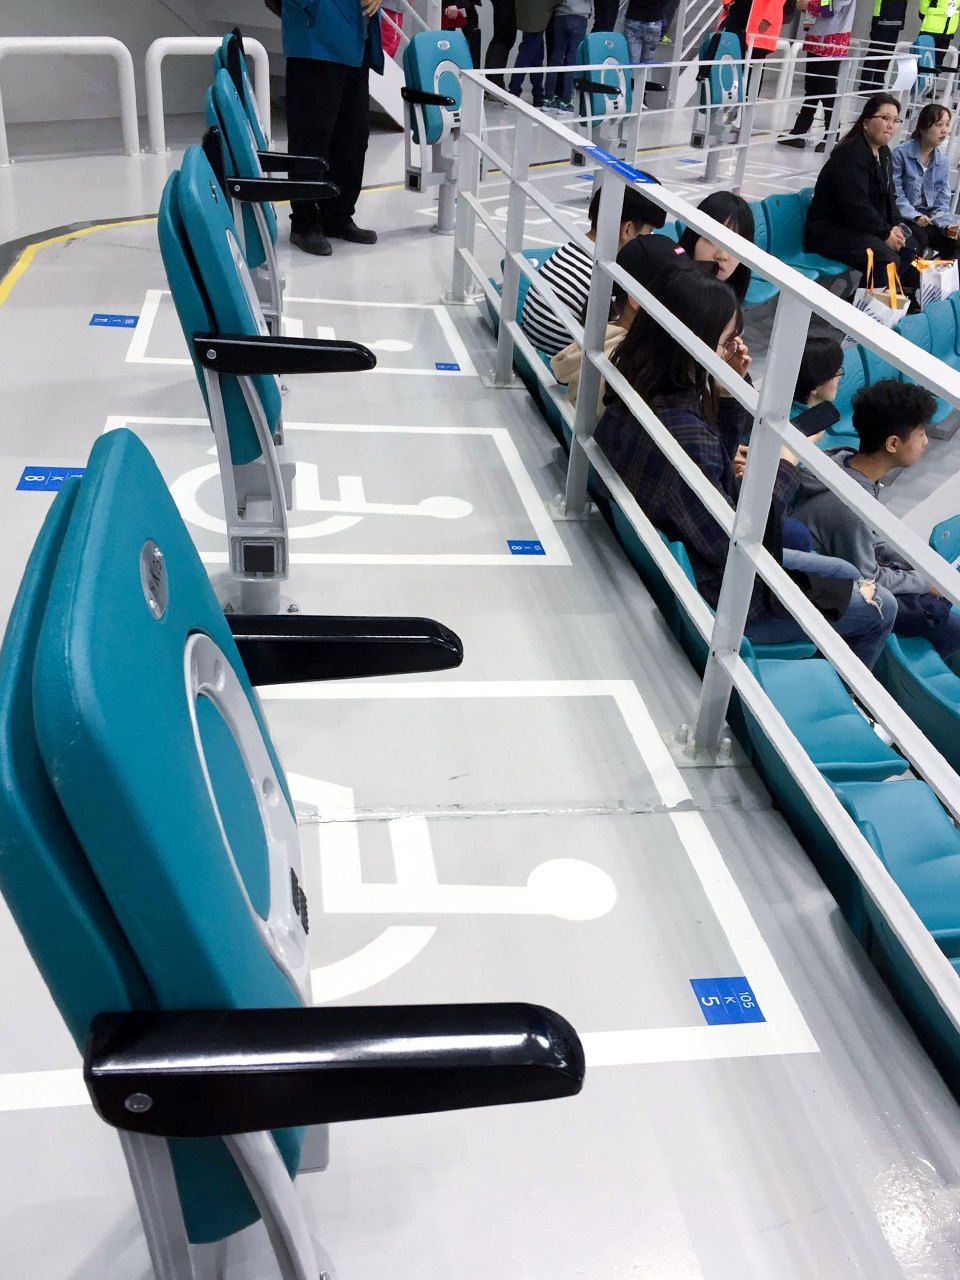 Une rangée de sièges des tribunes de la patinoire de Pyeongchang où se sont déroulées les épreuves de hockey sur luge des Jeux paralympiques de 2018.  Les emplacements pour fauteuil roulant étaient disposés d’une telle façon qu’il était impossible à deux personnes handicapées d’assister aux compétitions côte à côte.